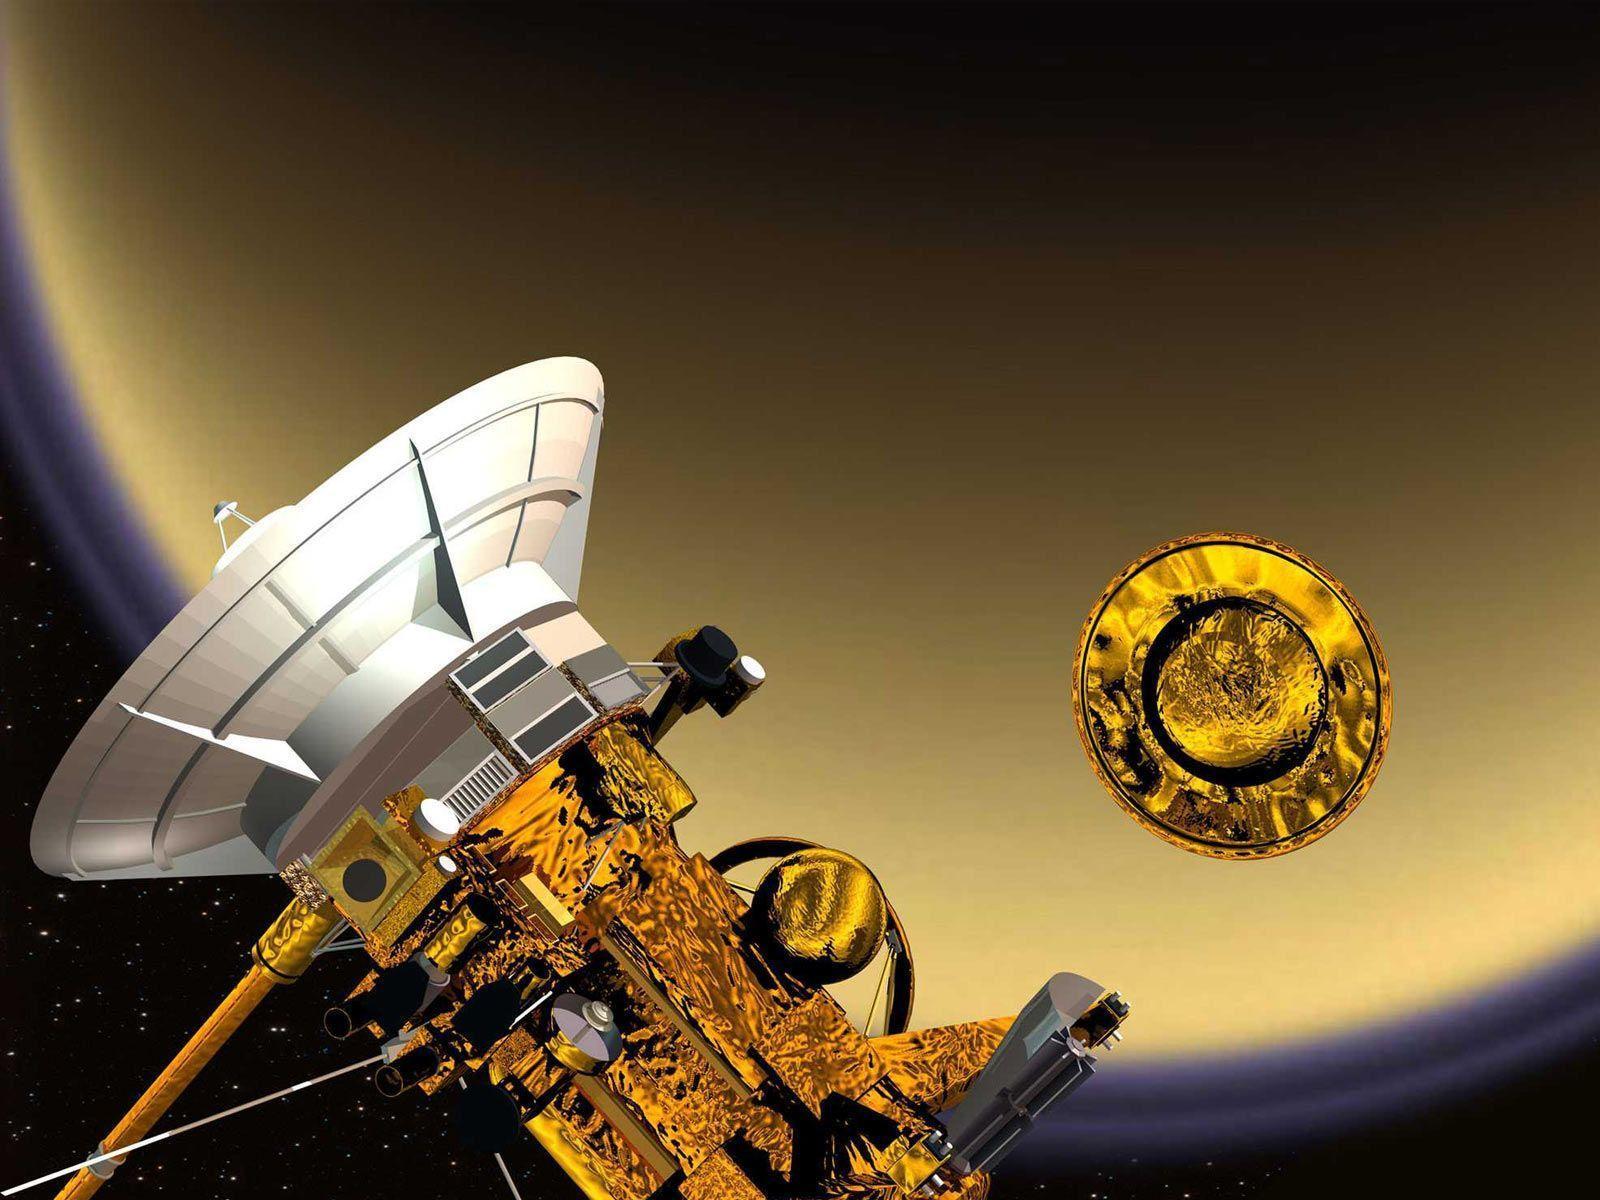 Desktop Wallpaper · Gallery · Space · Cassini robotic spacecraft